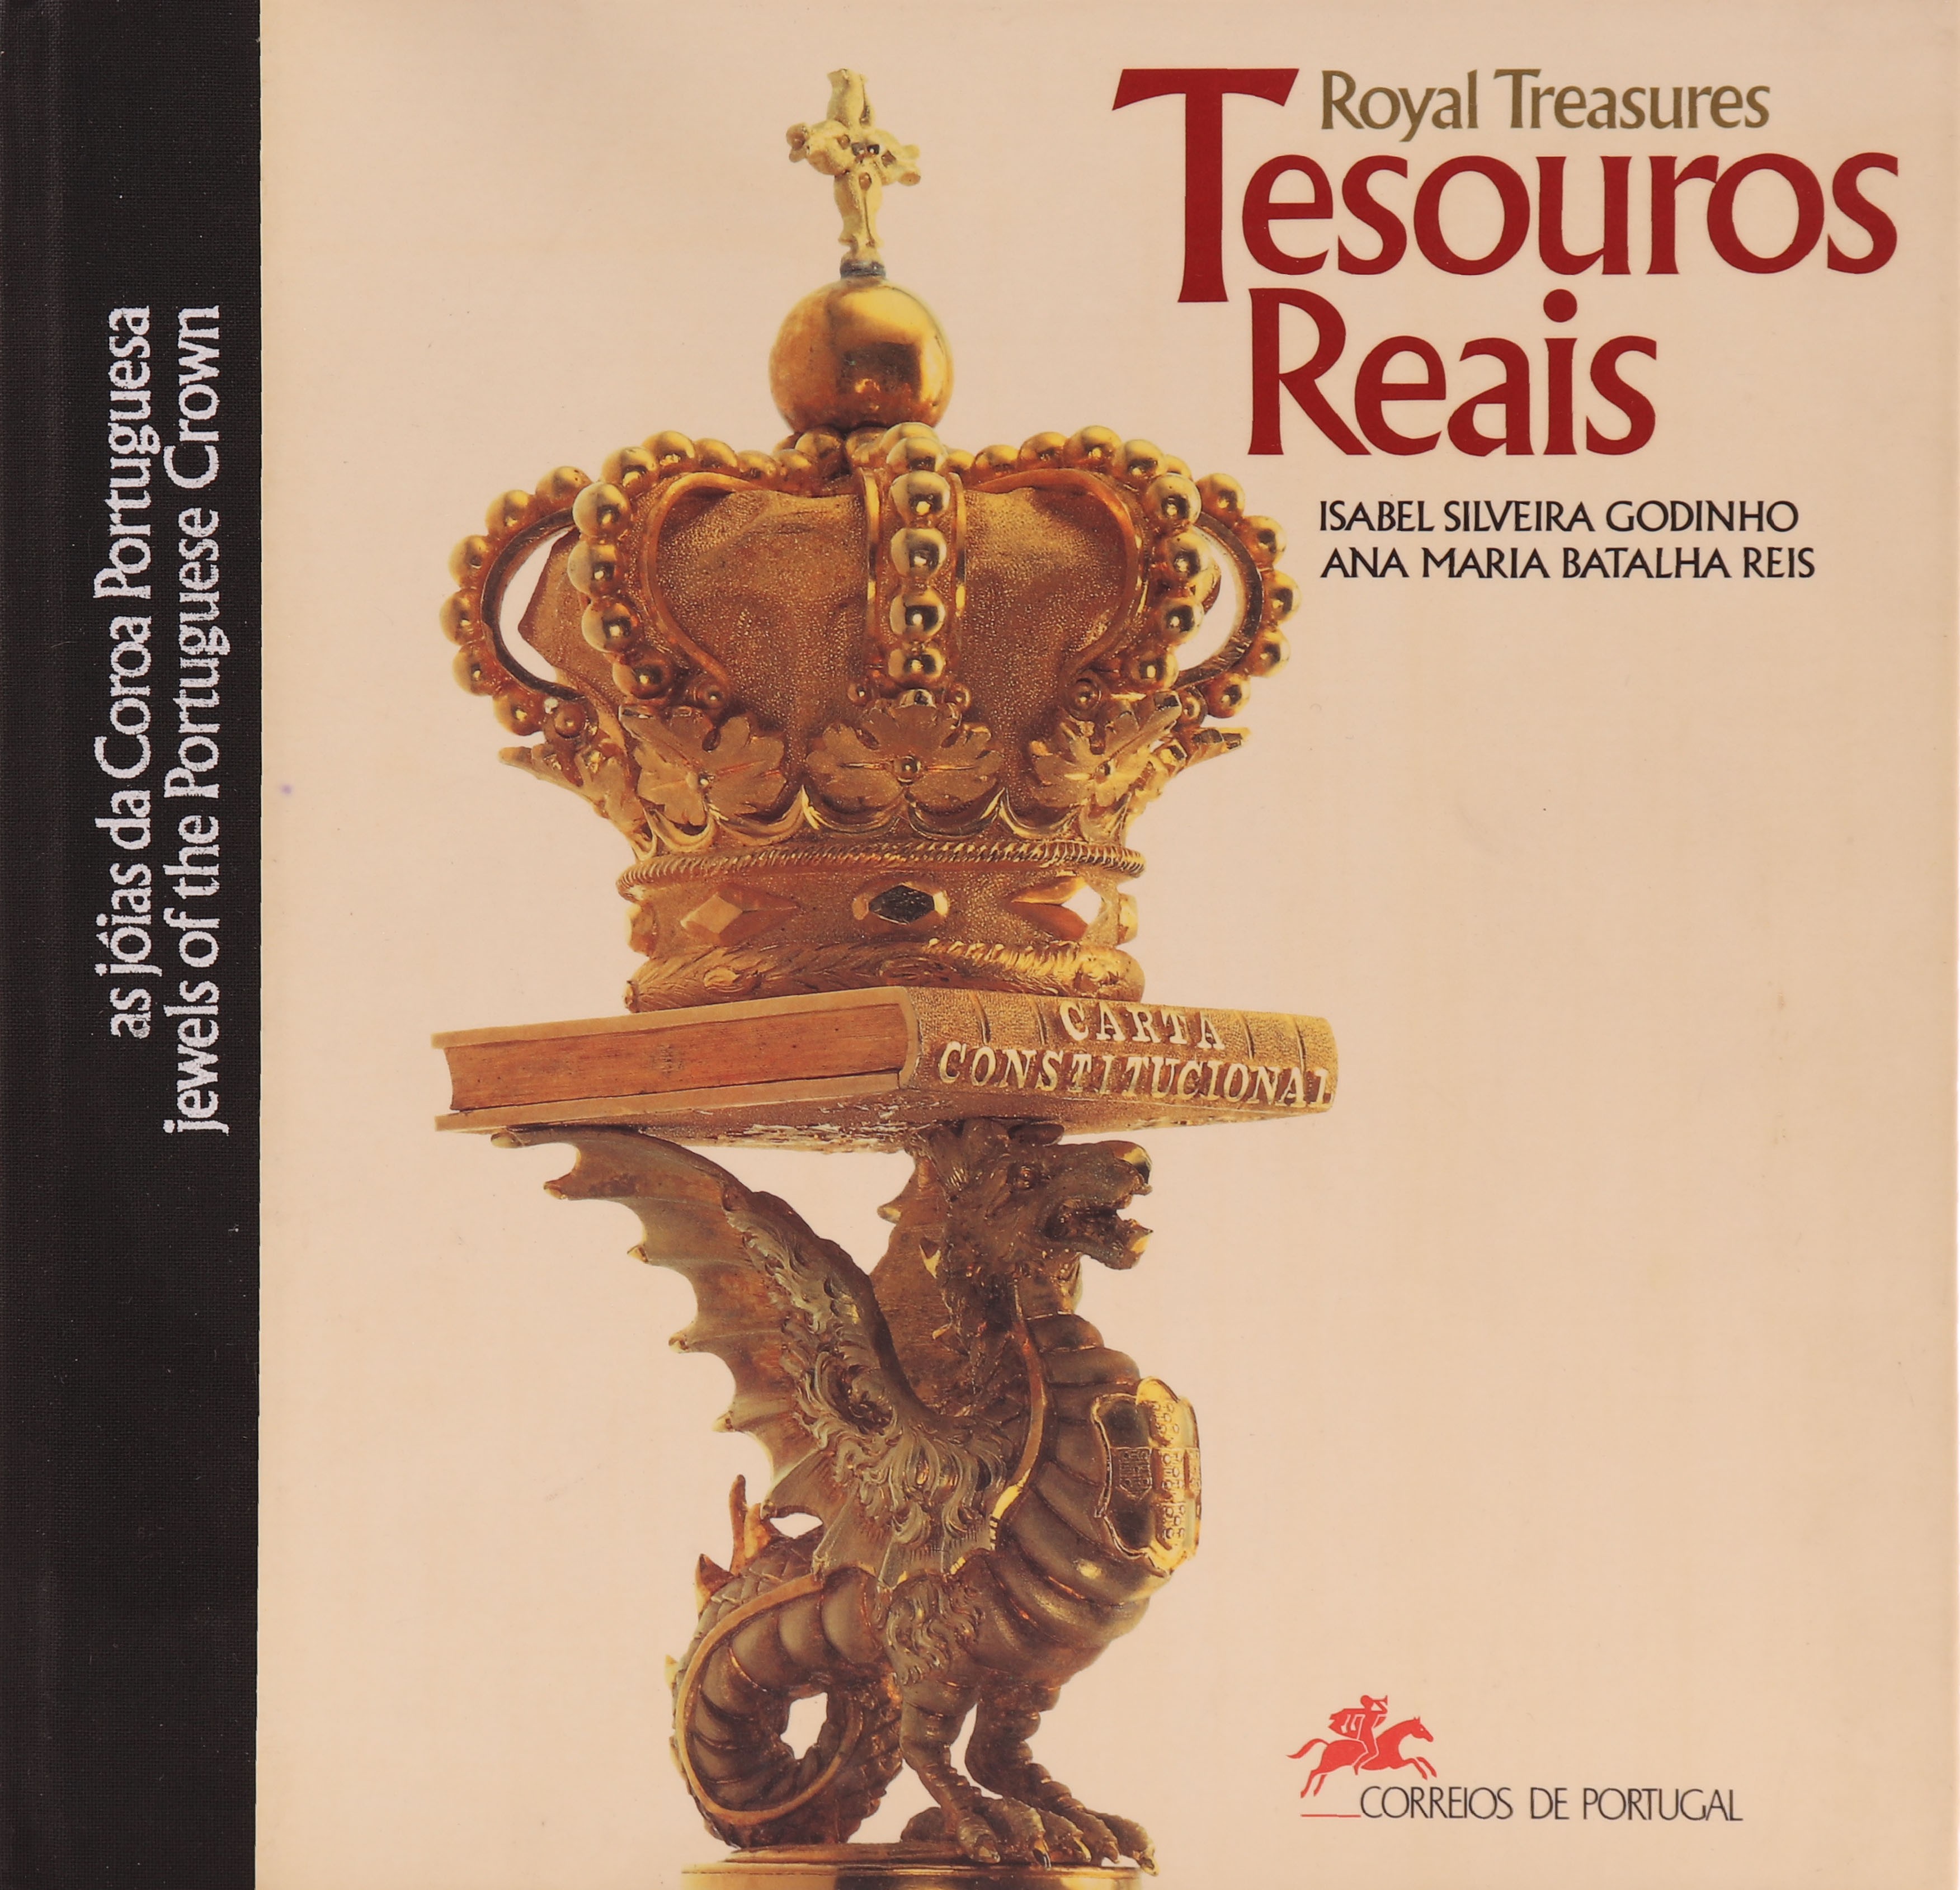 Livro dos CTT - Tesouros reais, as joias da coroa Portuguesa